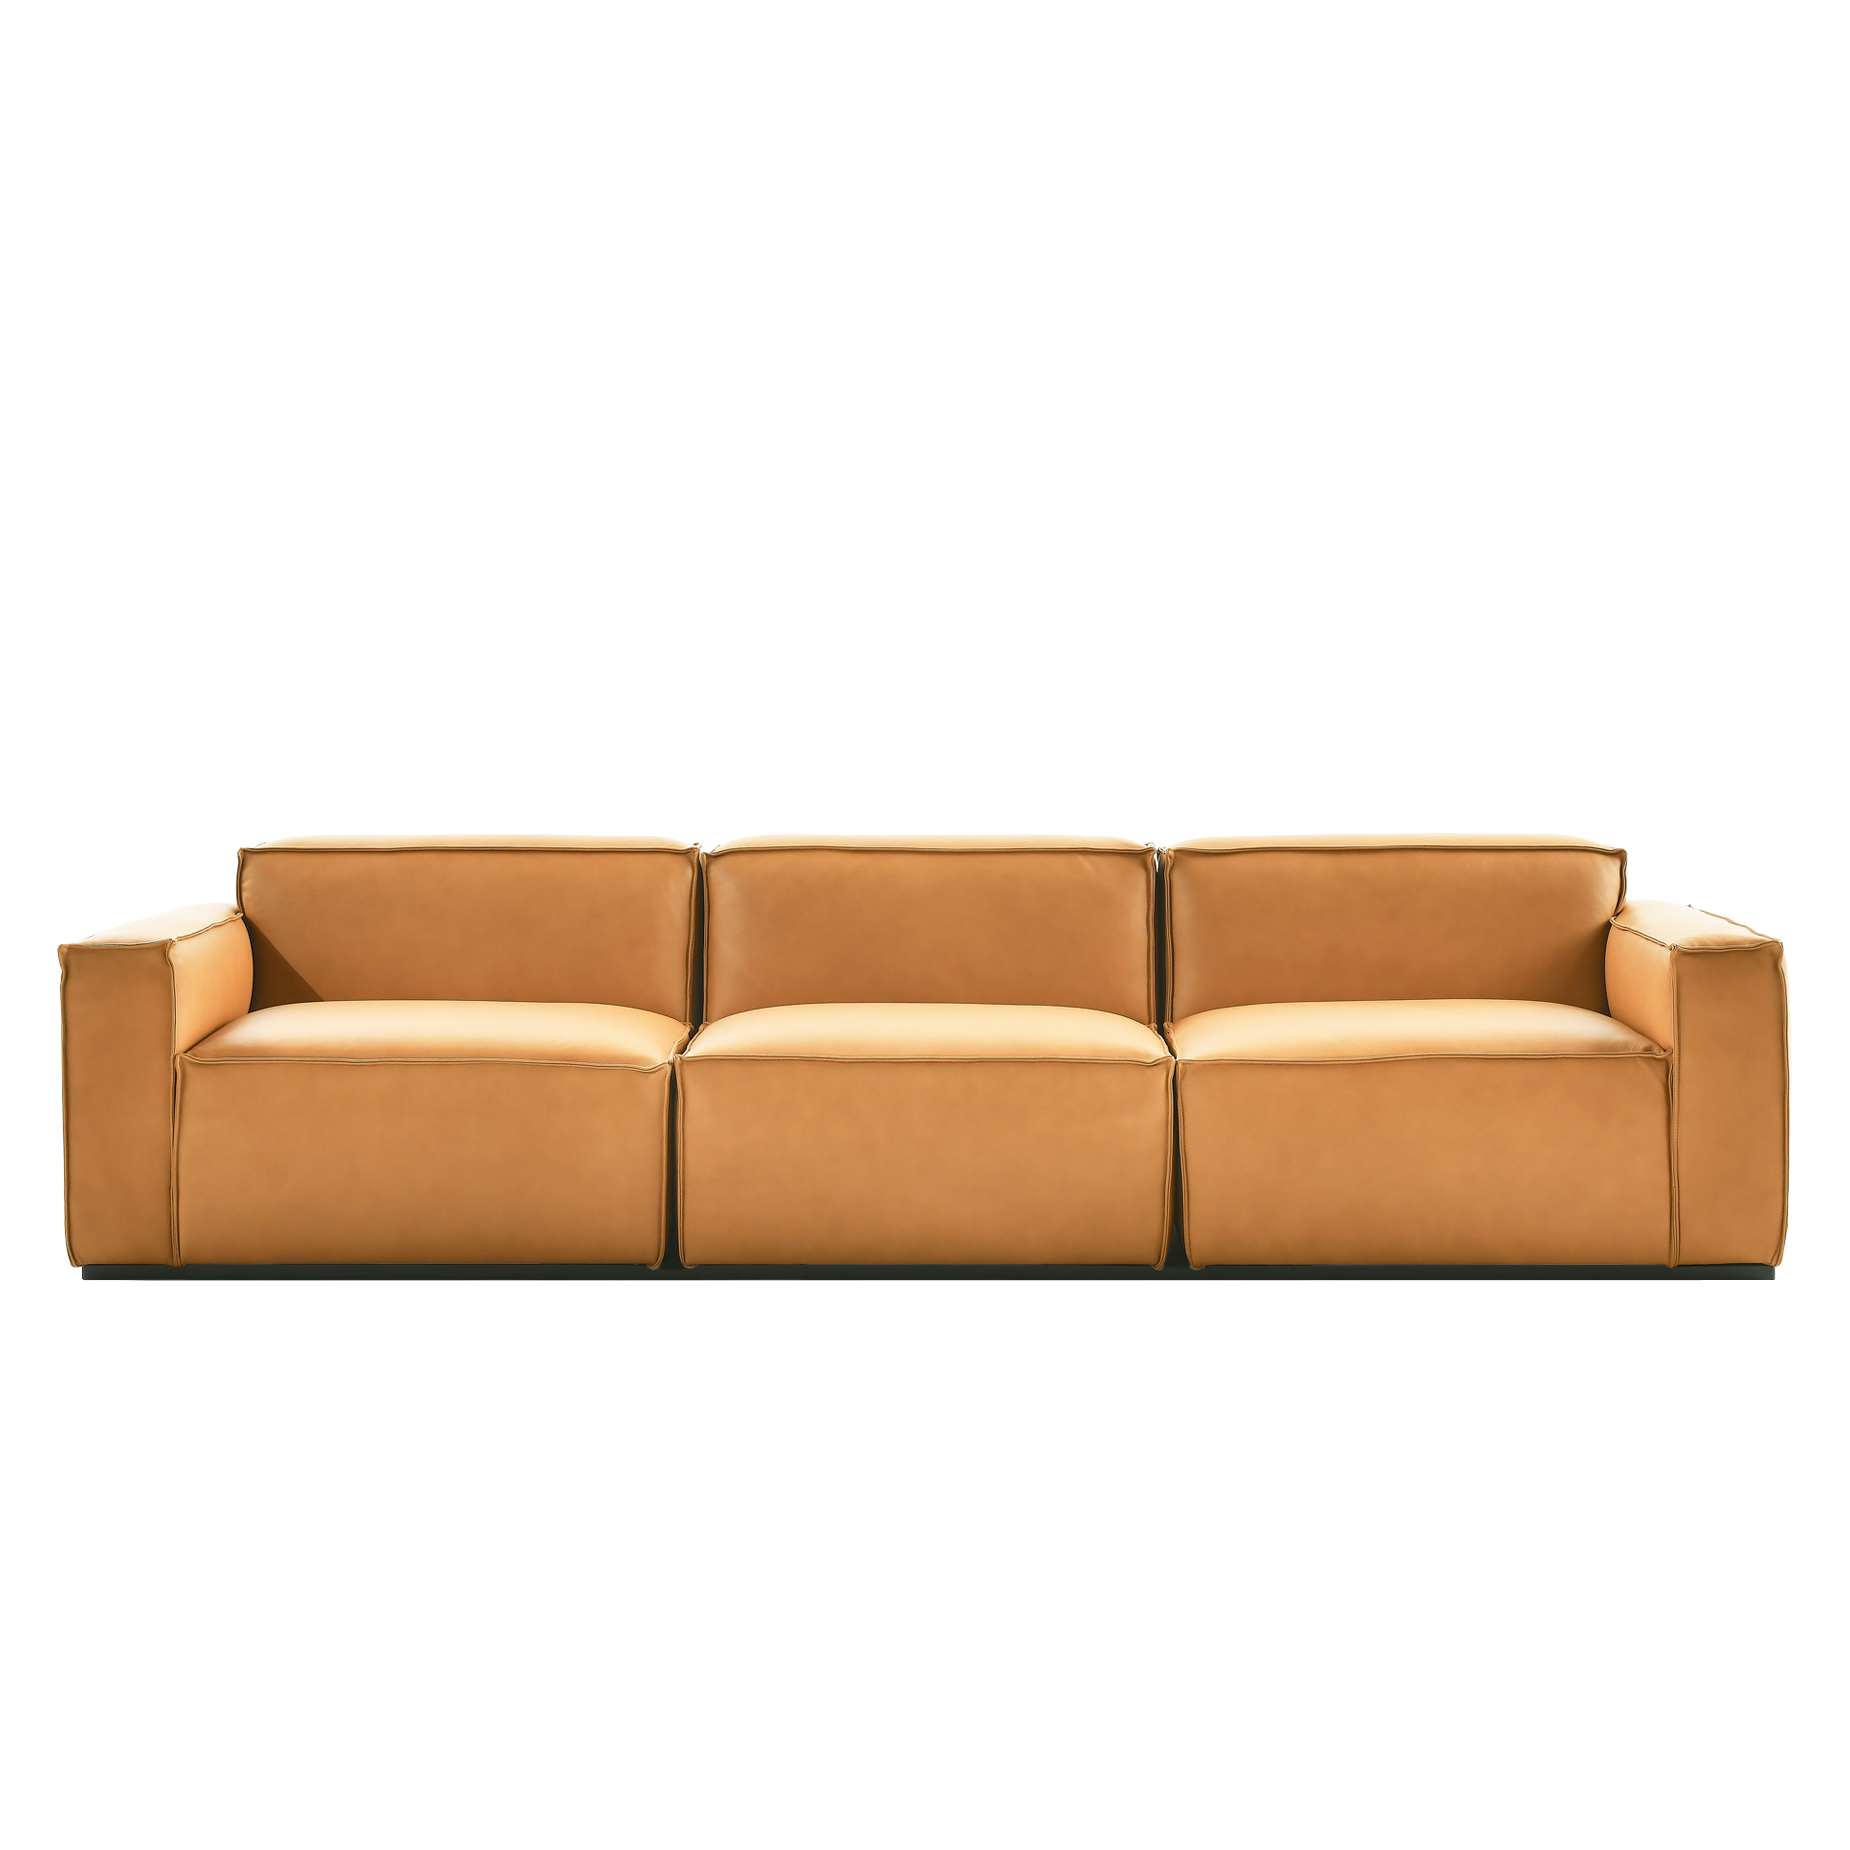 (주)도이치 DOICH ®    PEN2 modular sofa 도이치 펜2 4인 모듈소파  [4주 주문제작]